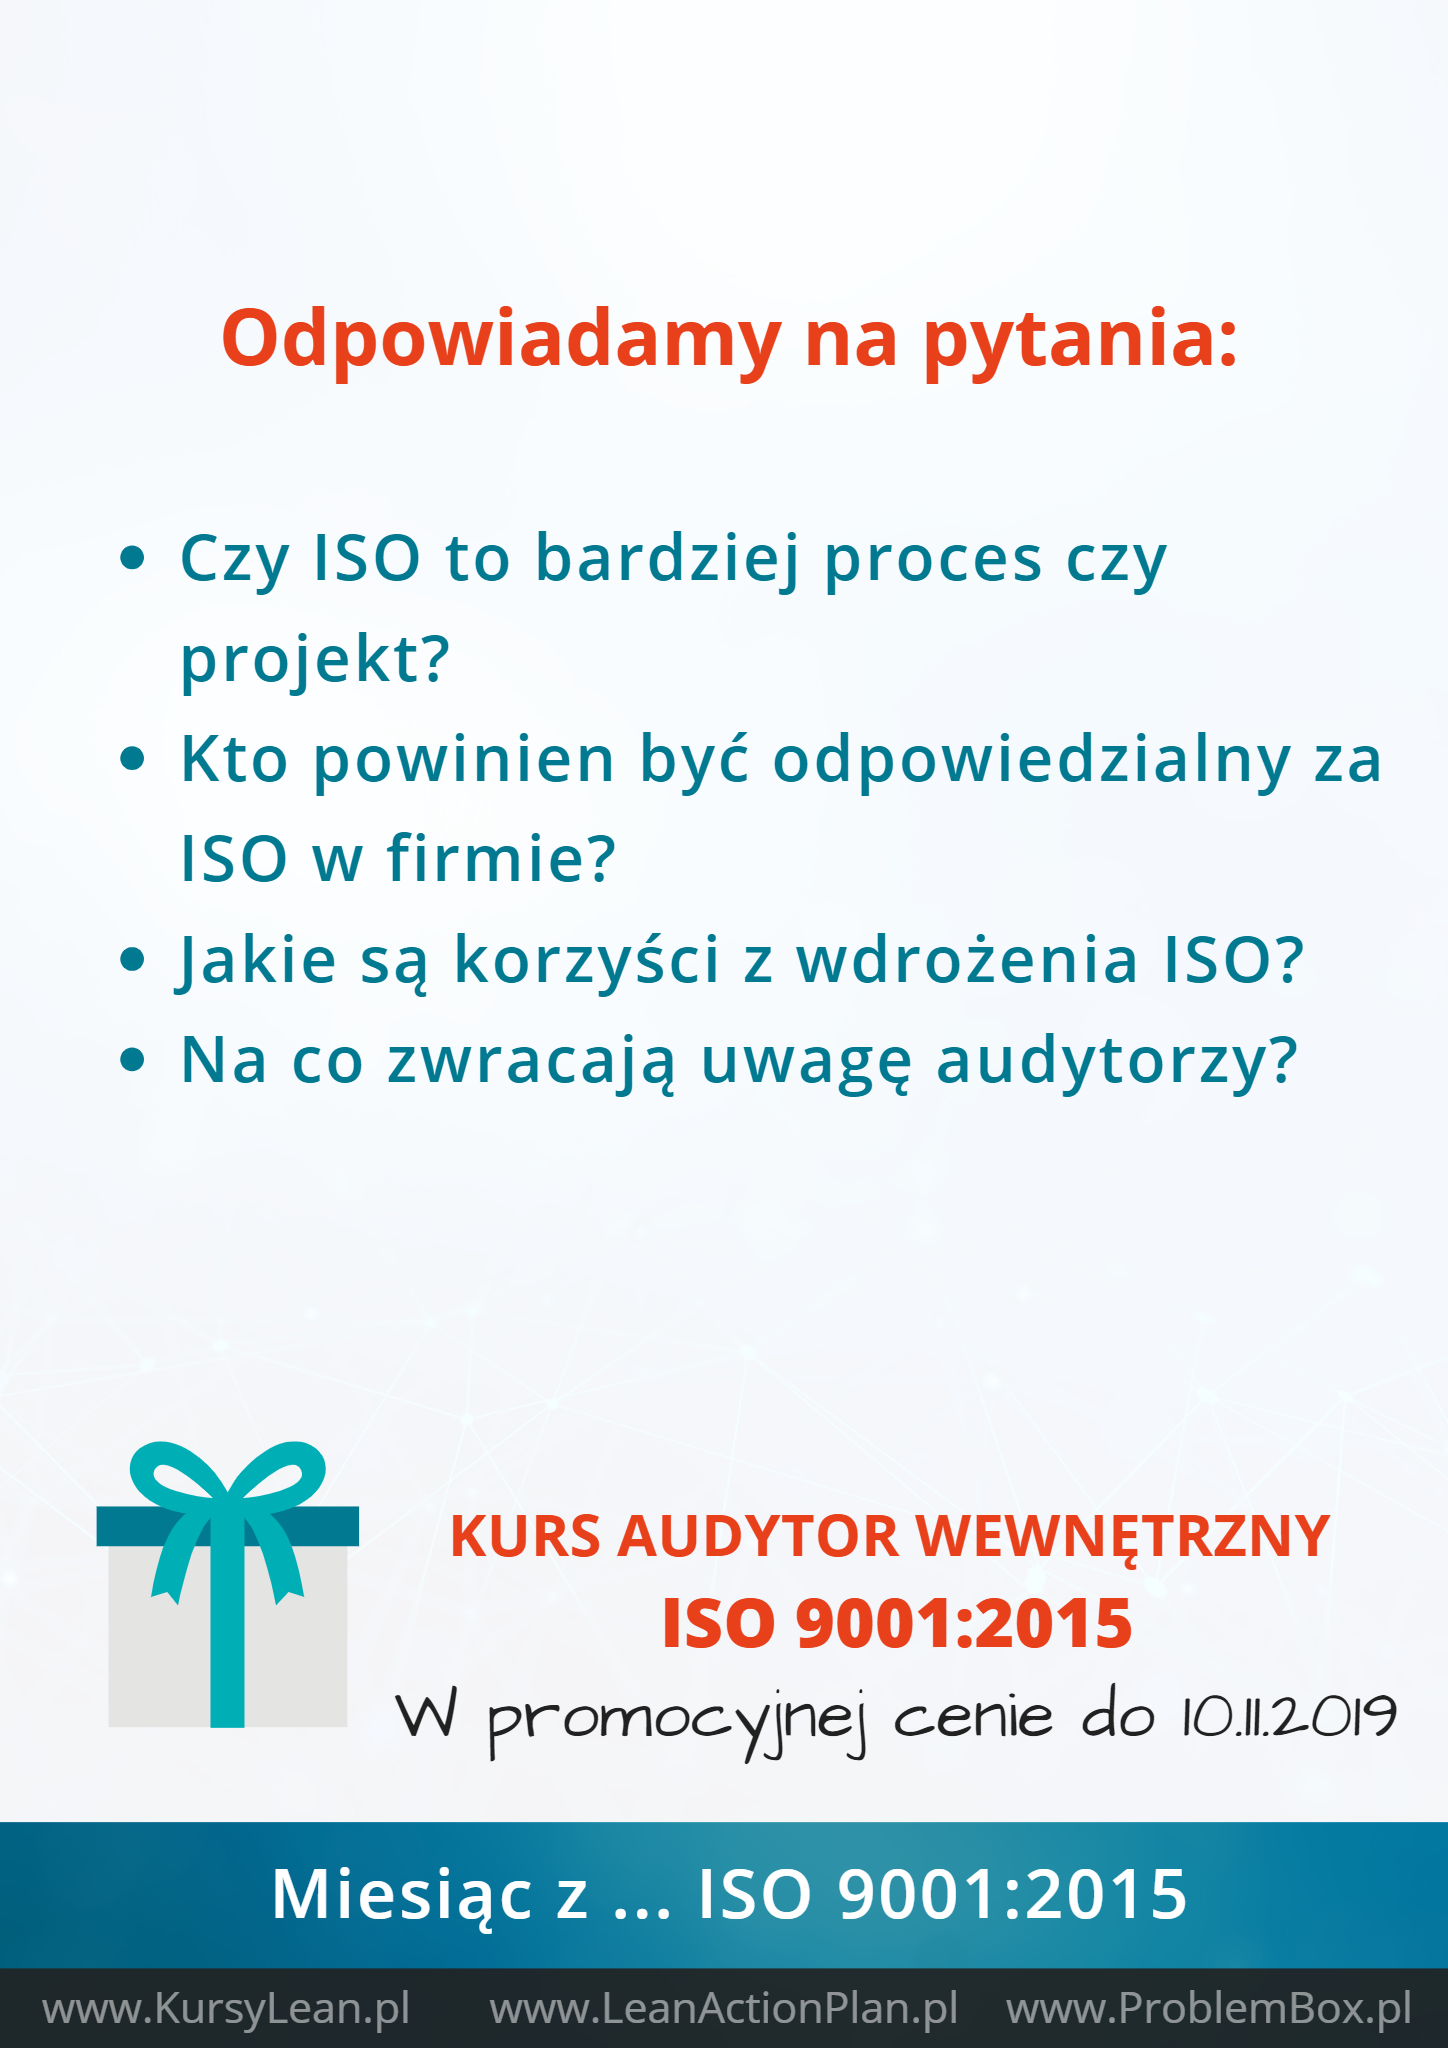 ISO 9001,2015 - Podsumowanie2